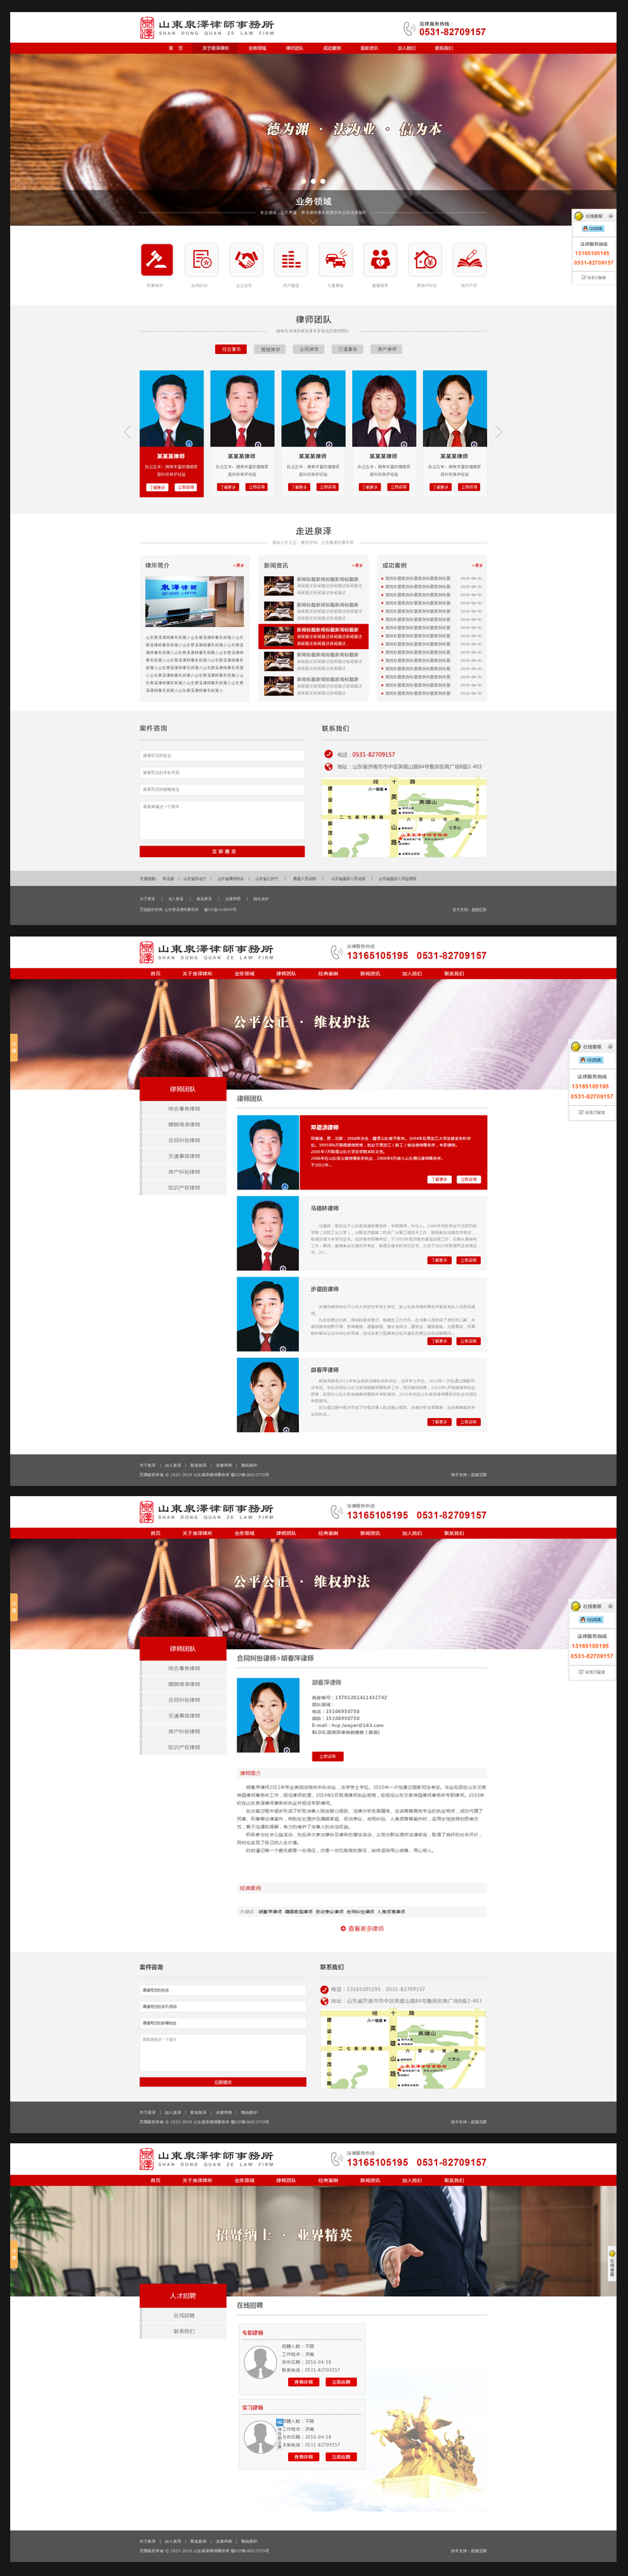 律师事务所网站建设